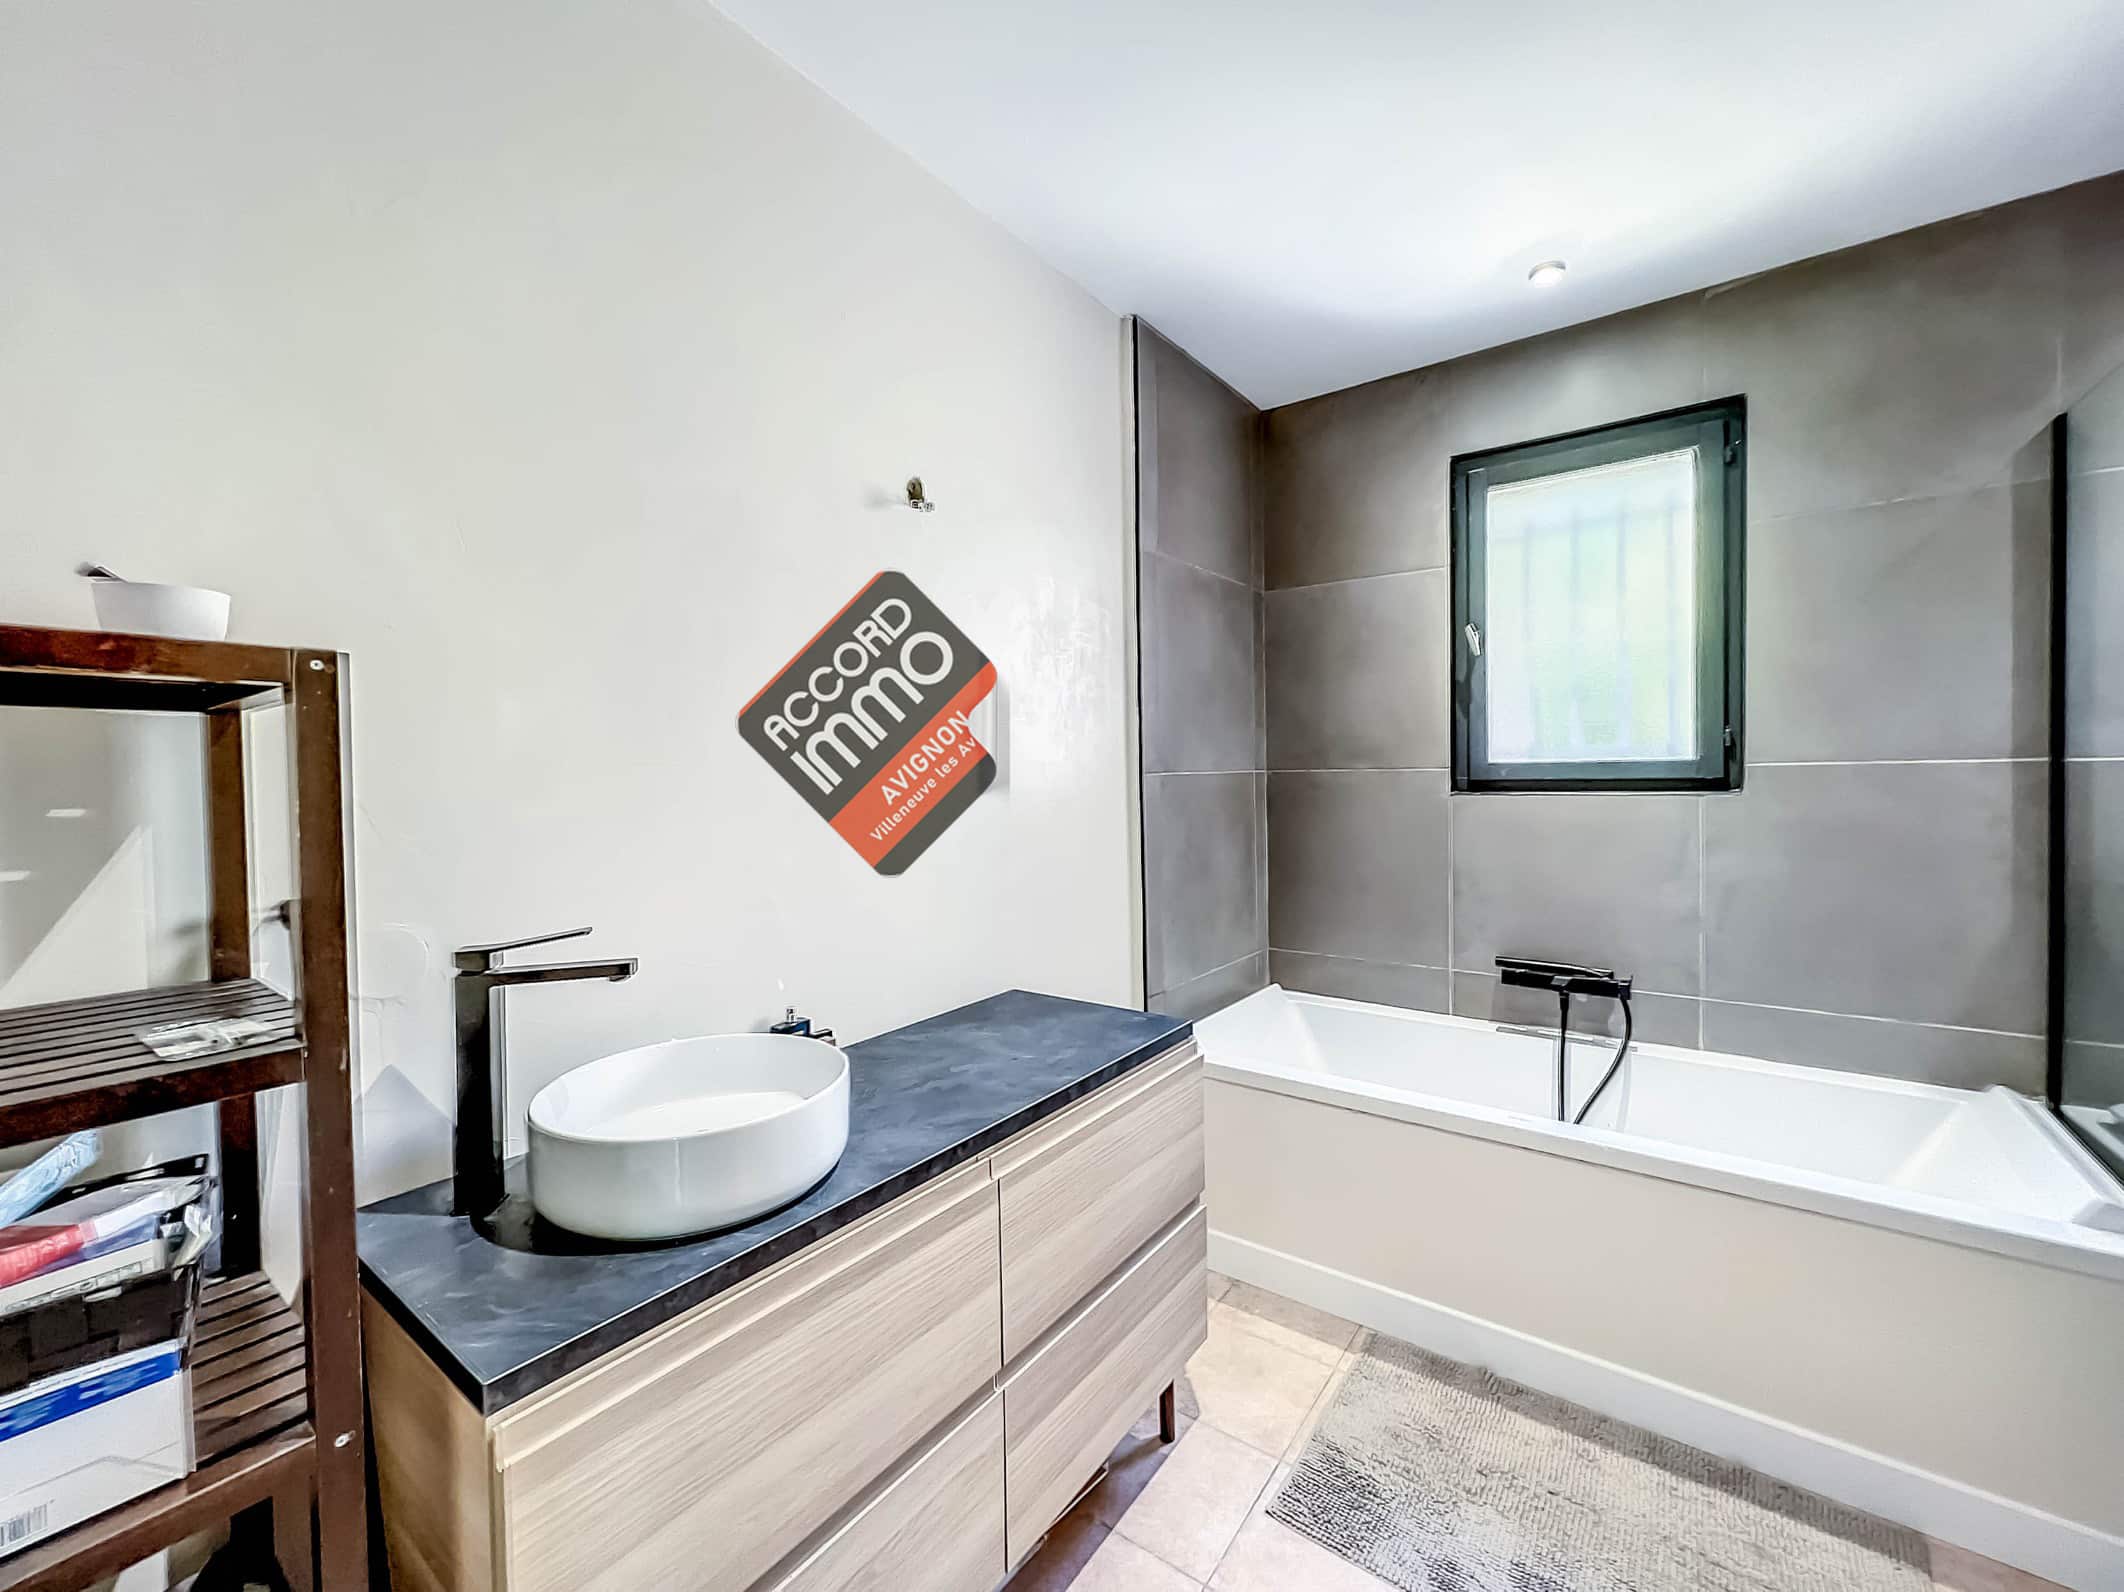 Salle de bains moderne avec baignoire et douche ety fenetre